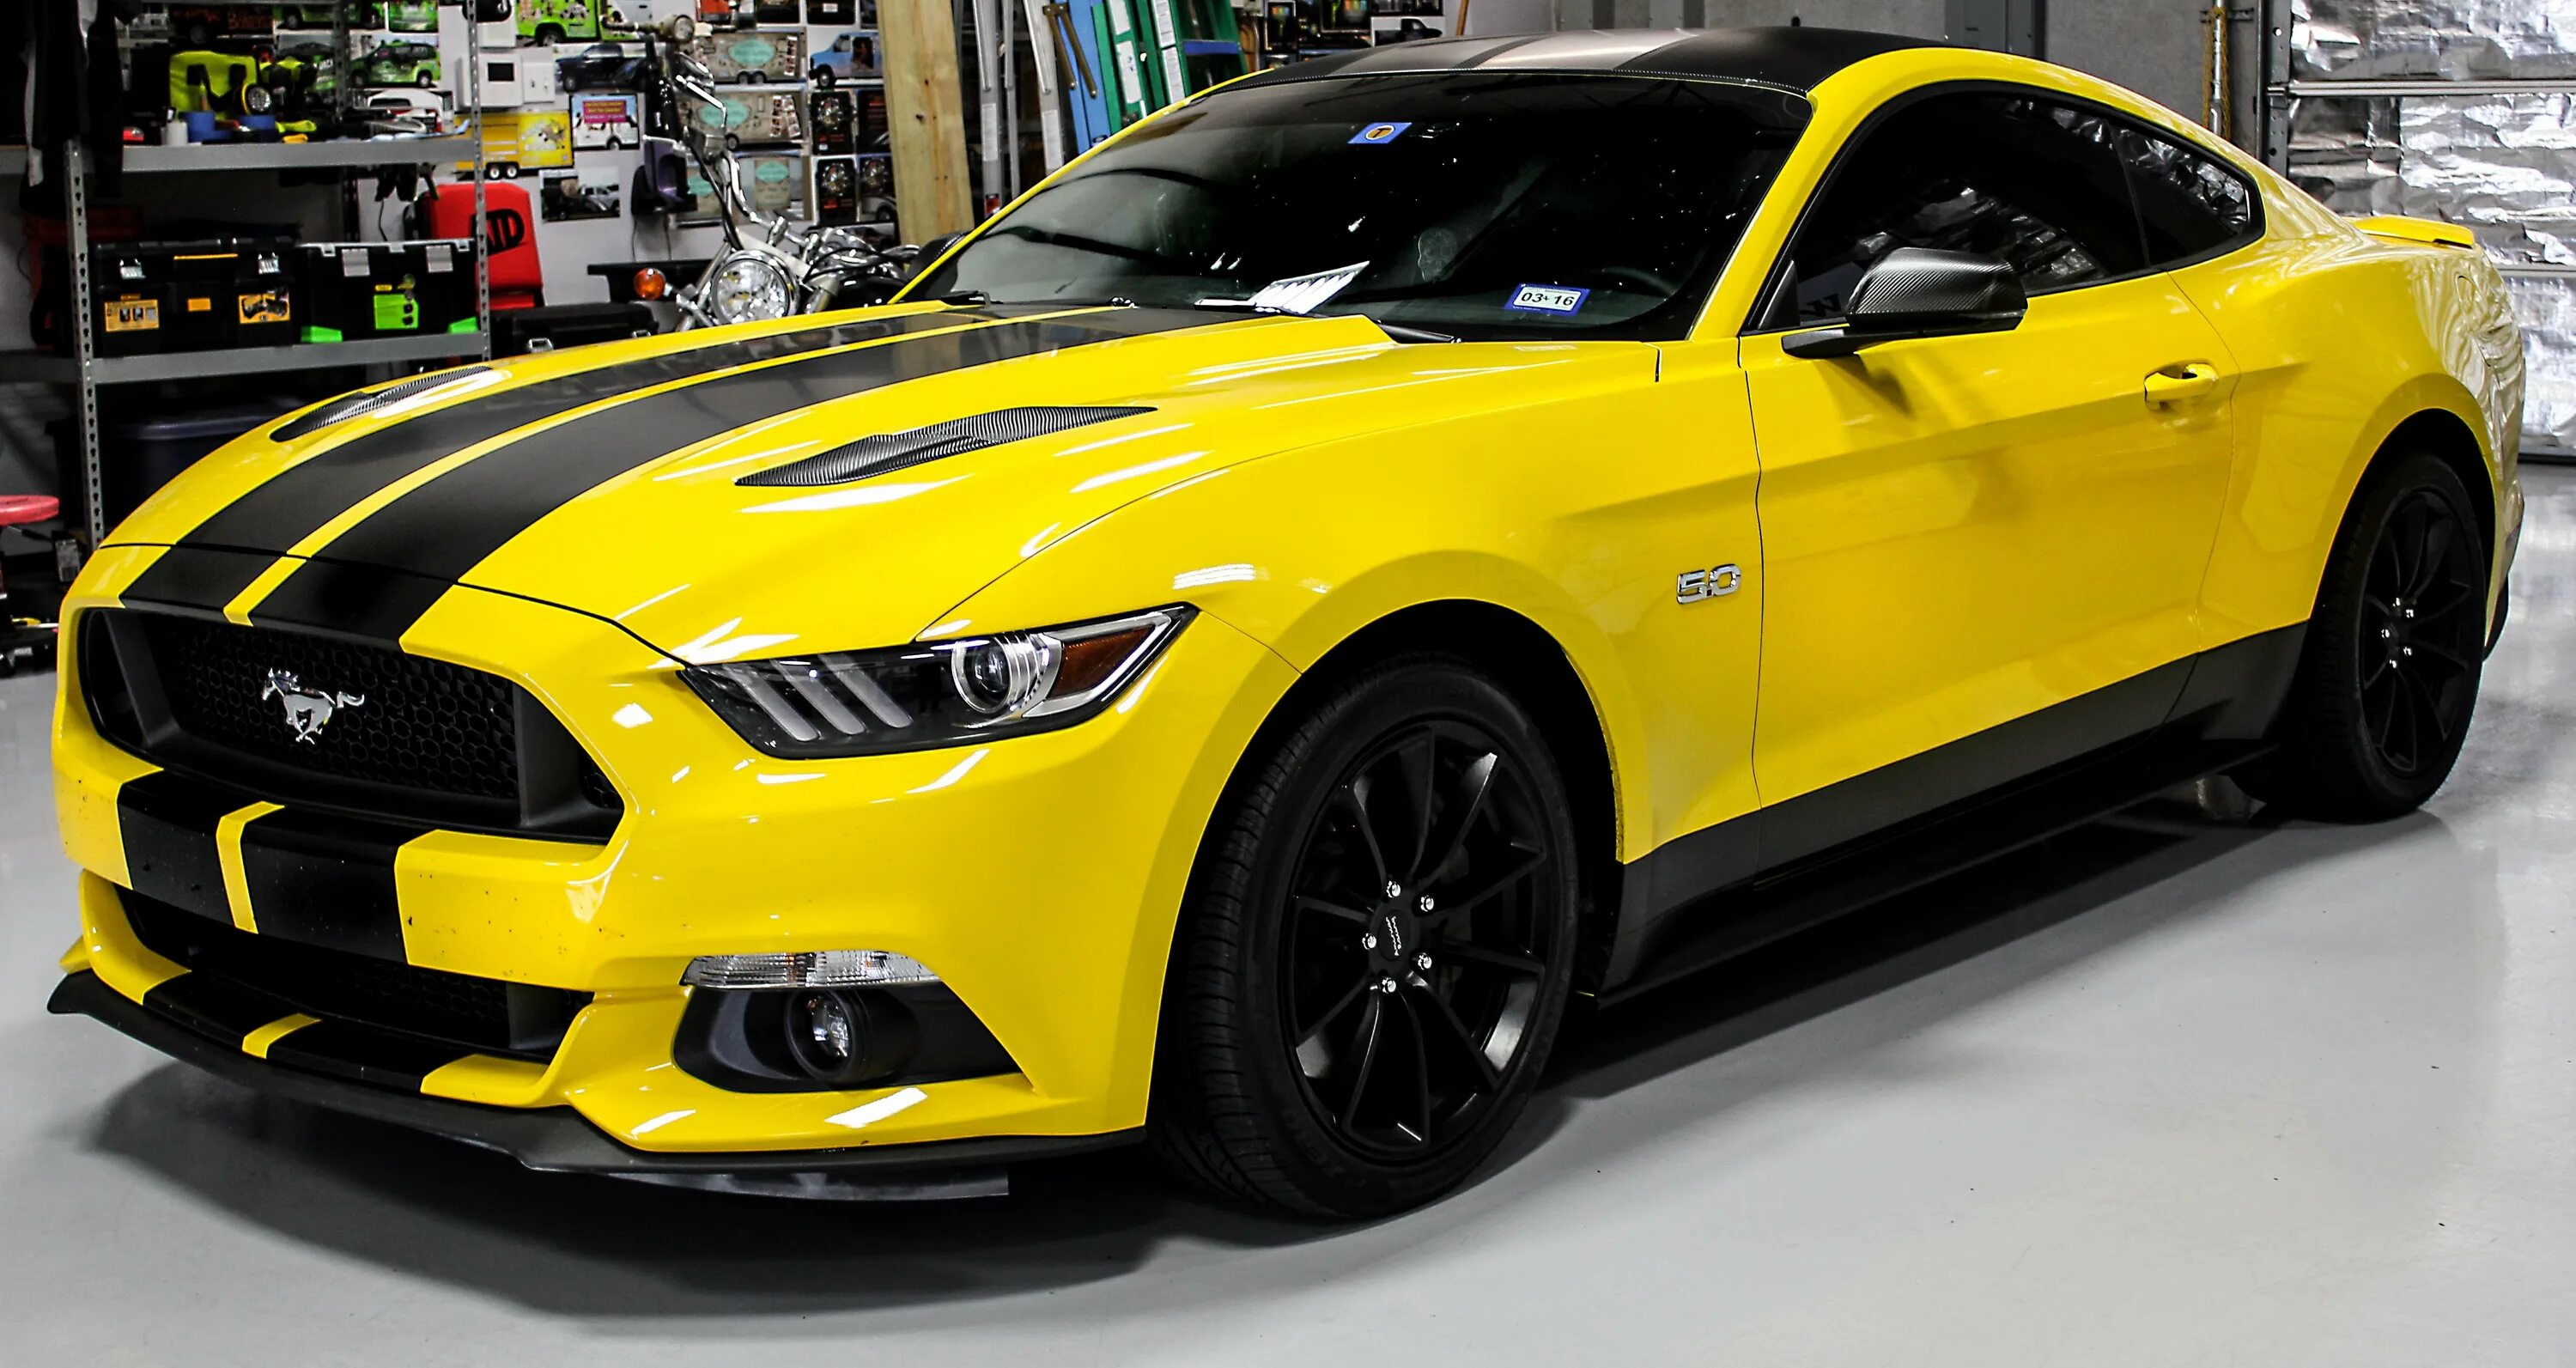 Ford Mustang 2020 желтый. Форд Мустанг ГТ желтый. Форд Мустанг ГТ 500 желтый. Форд Мустанг 2020 желтый. Машина с черными полосками